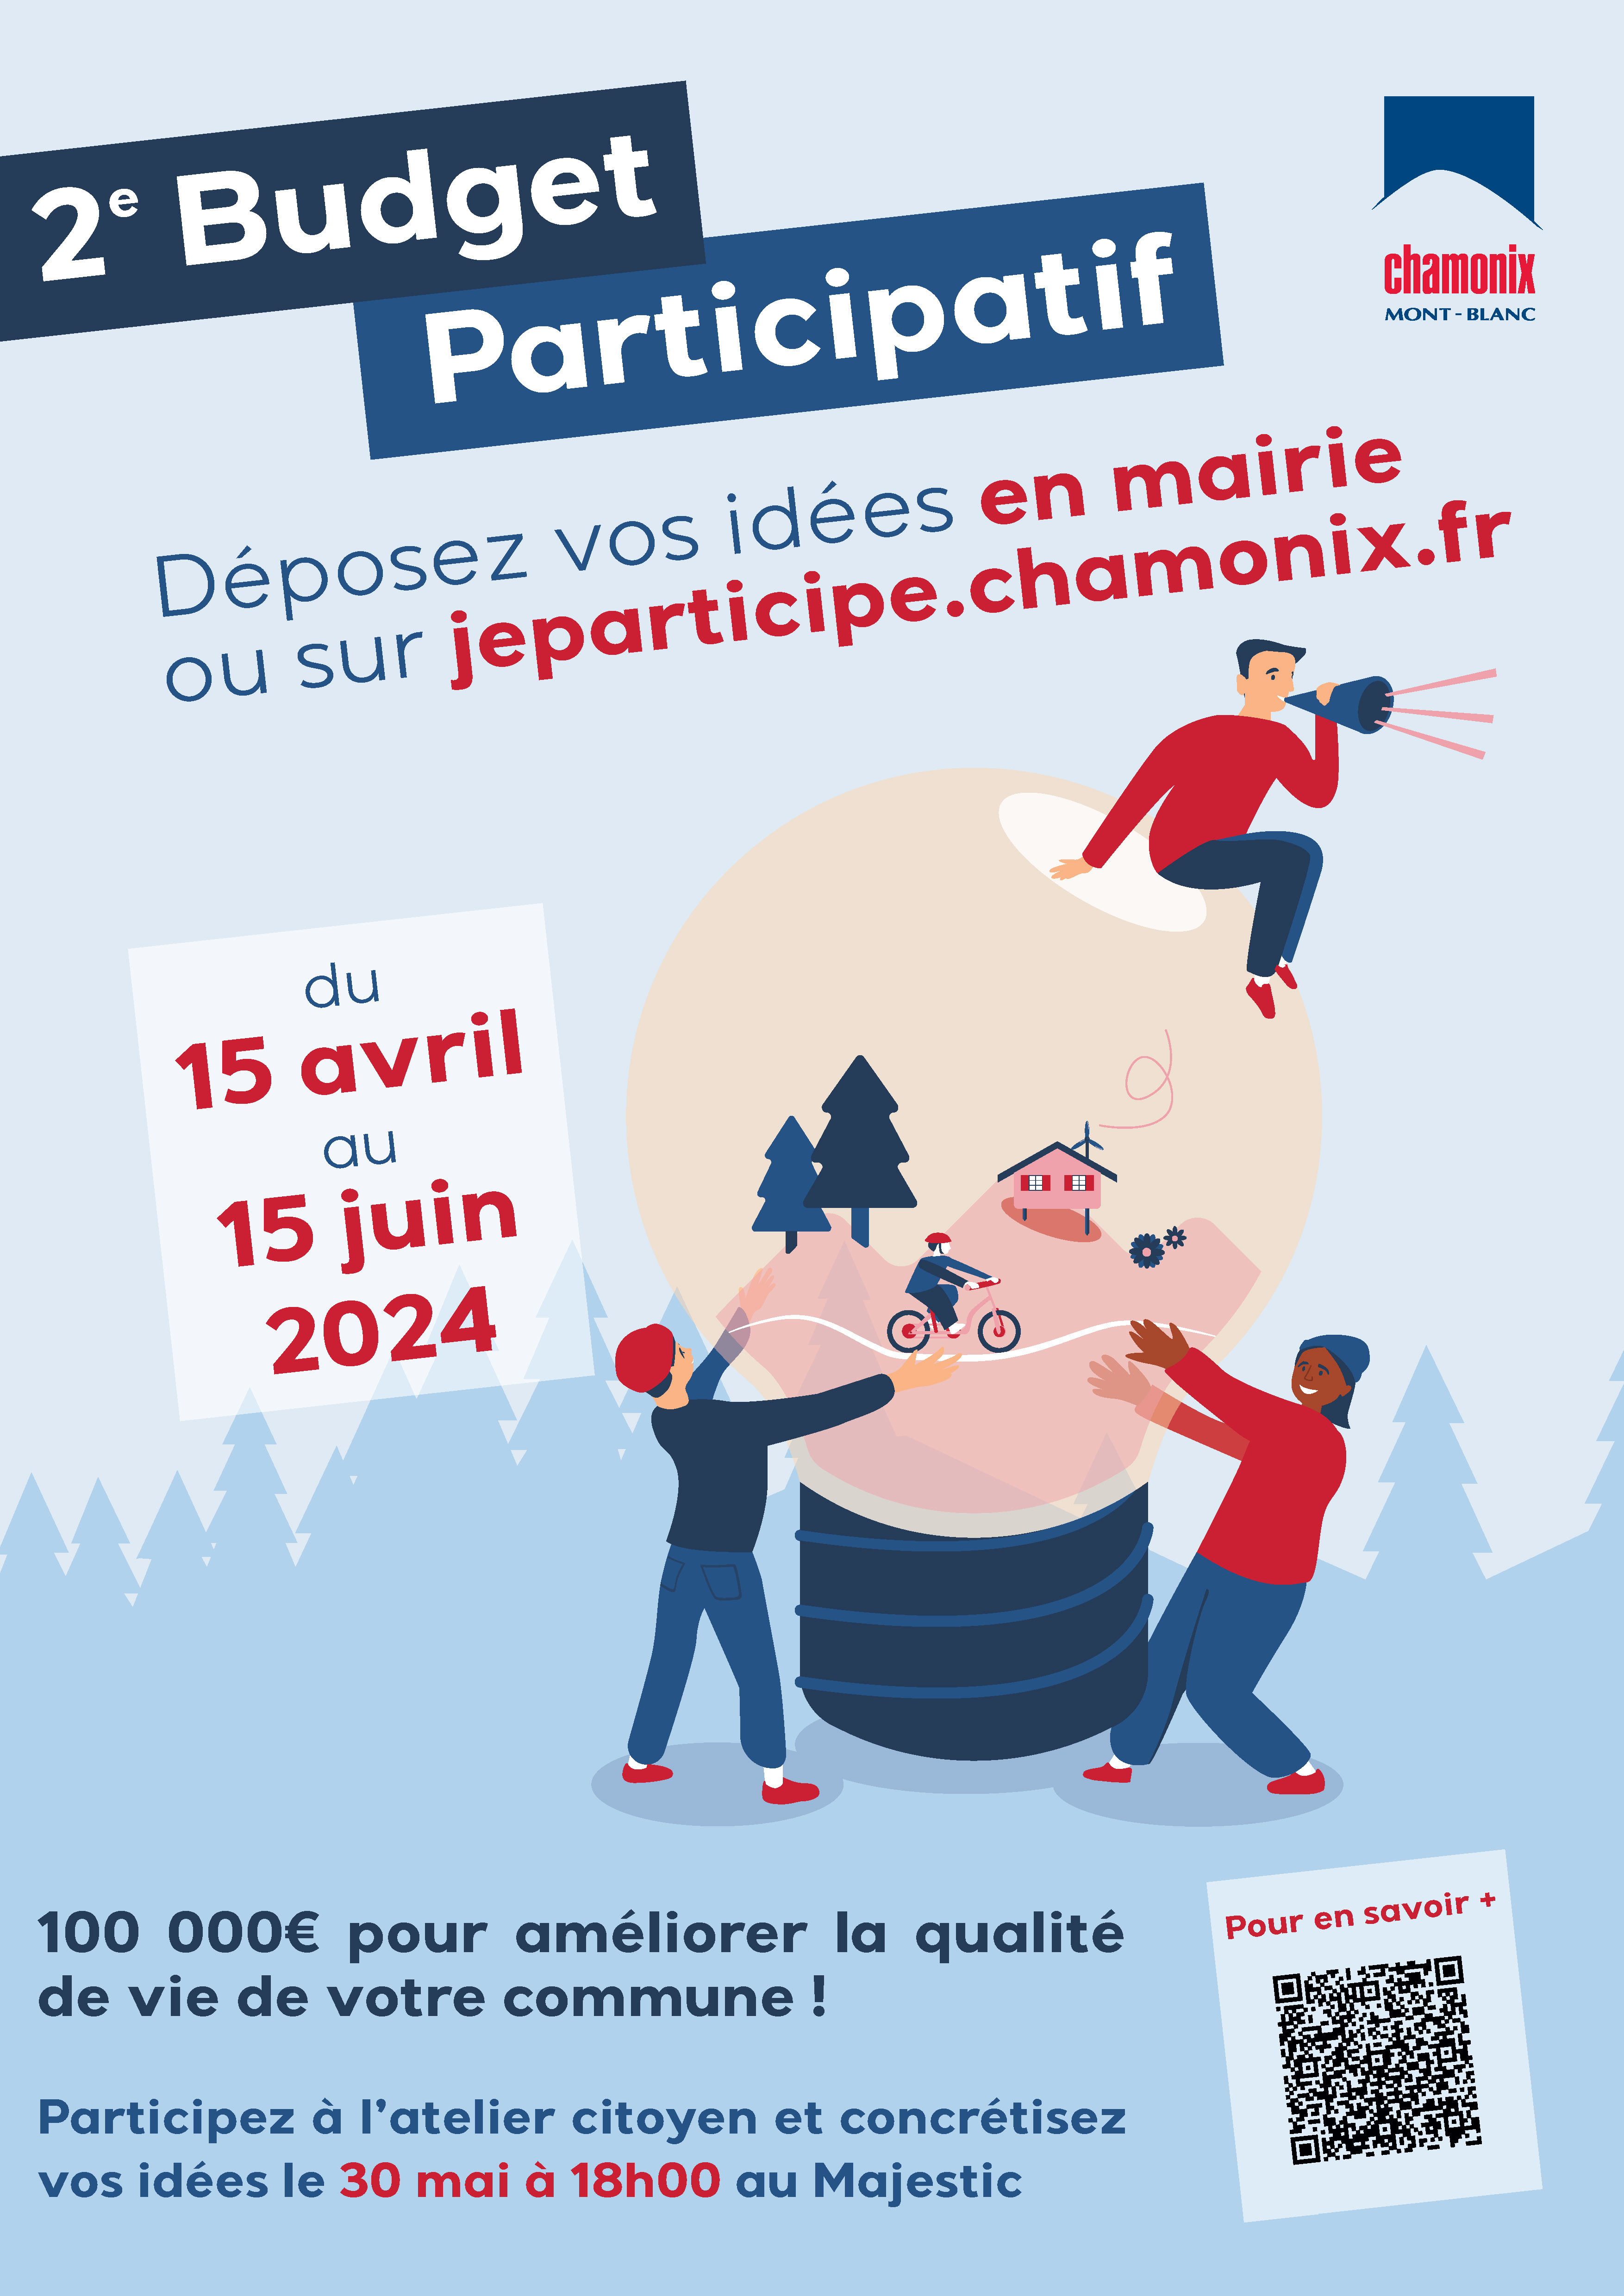 Lancement de la 2e édition du budget participatif jusqu'au 15 juin 2024 à Chamonix-Mont-Blanc